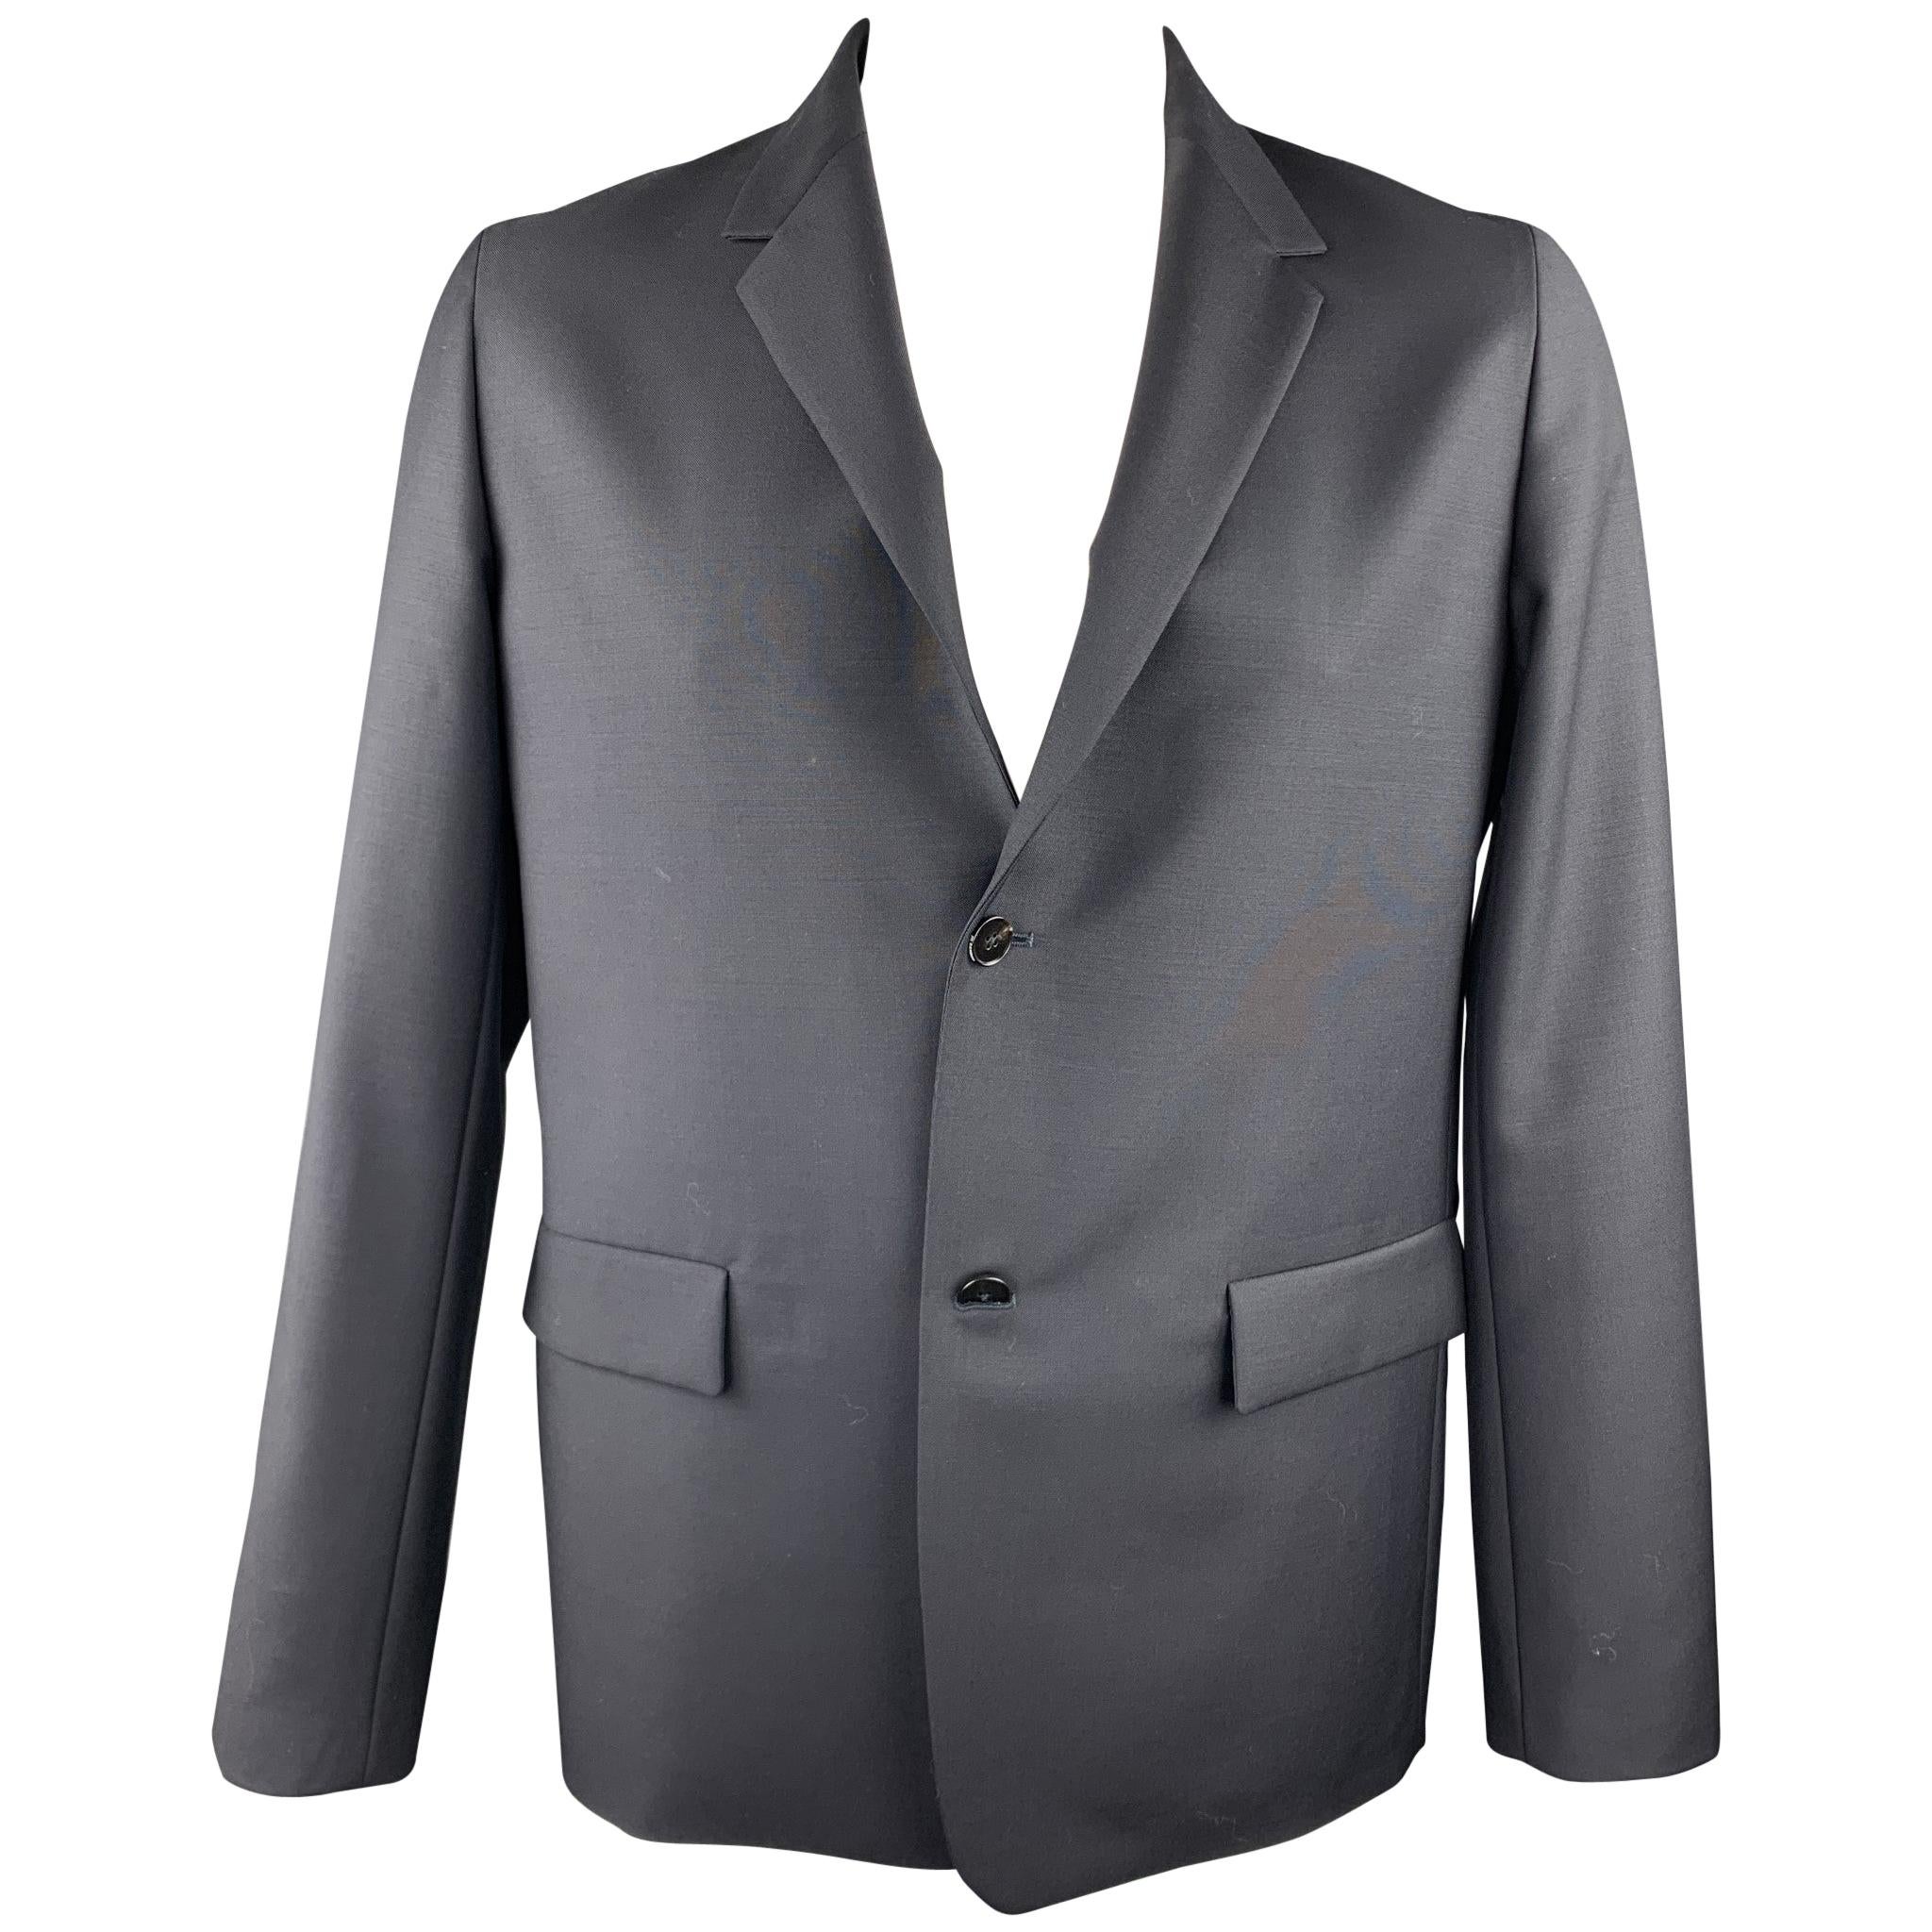 JIL SANDER Size 42 Black Wool / Mohair Notch Lapel Sport Coat / Jacket